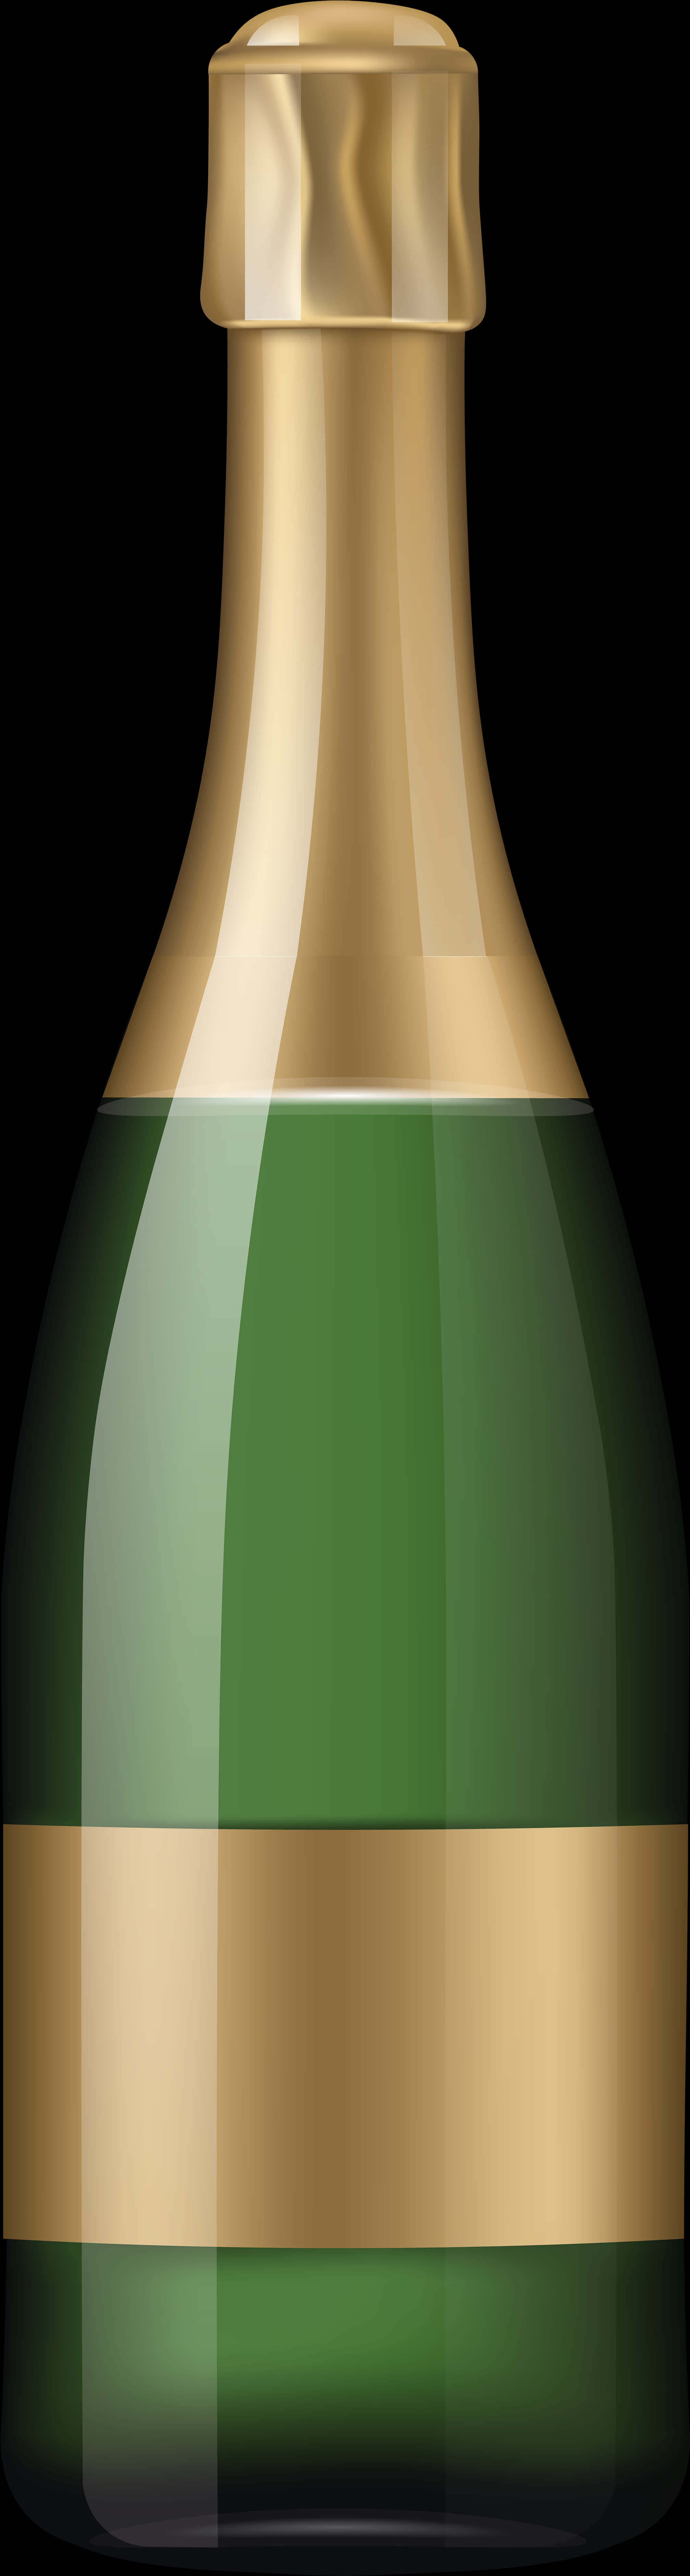 Champagne Bottle Vector Illustration PNG